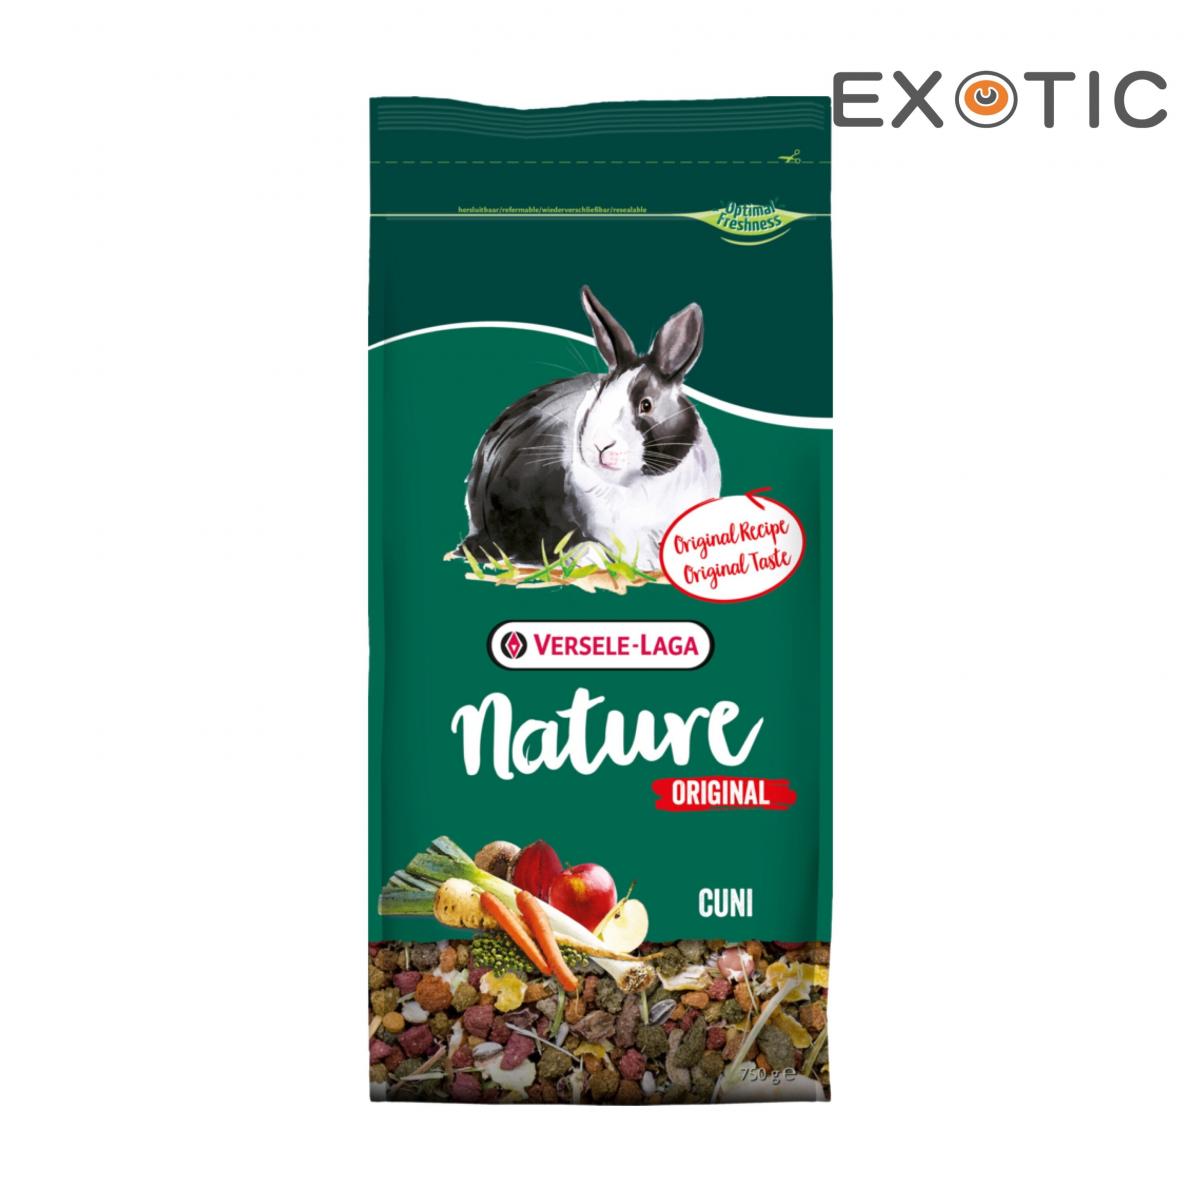 Nature Original Cuni 750g Varied, high-fibre mixture for rabbits